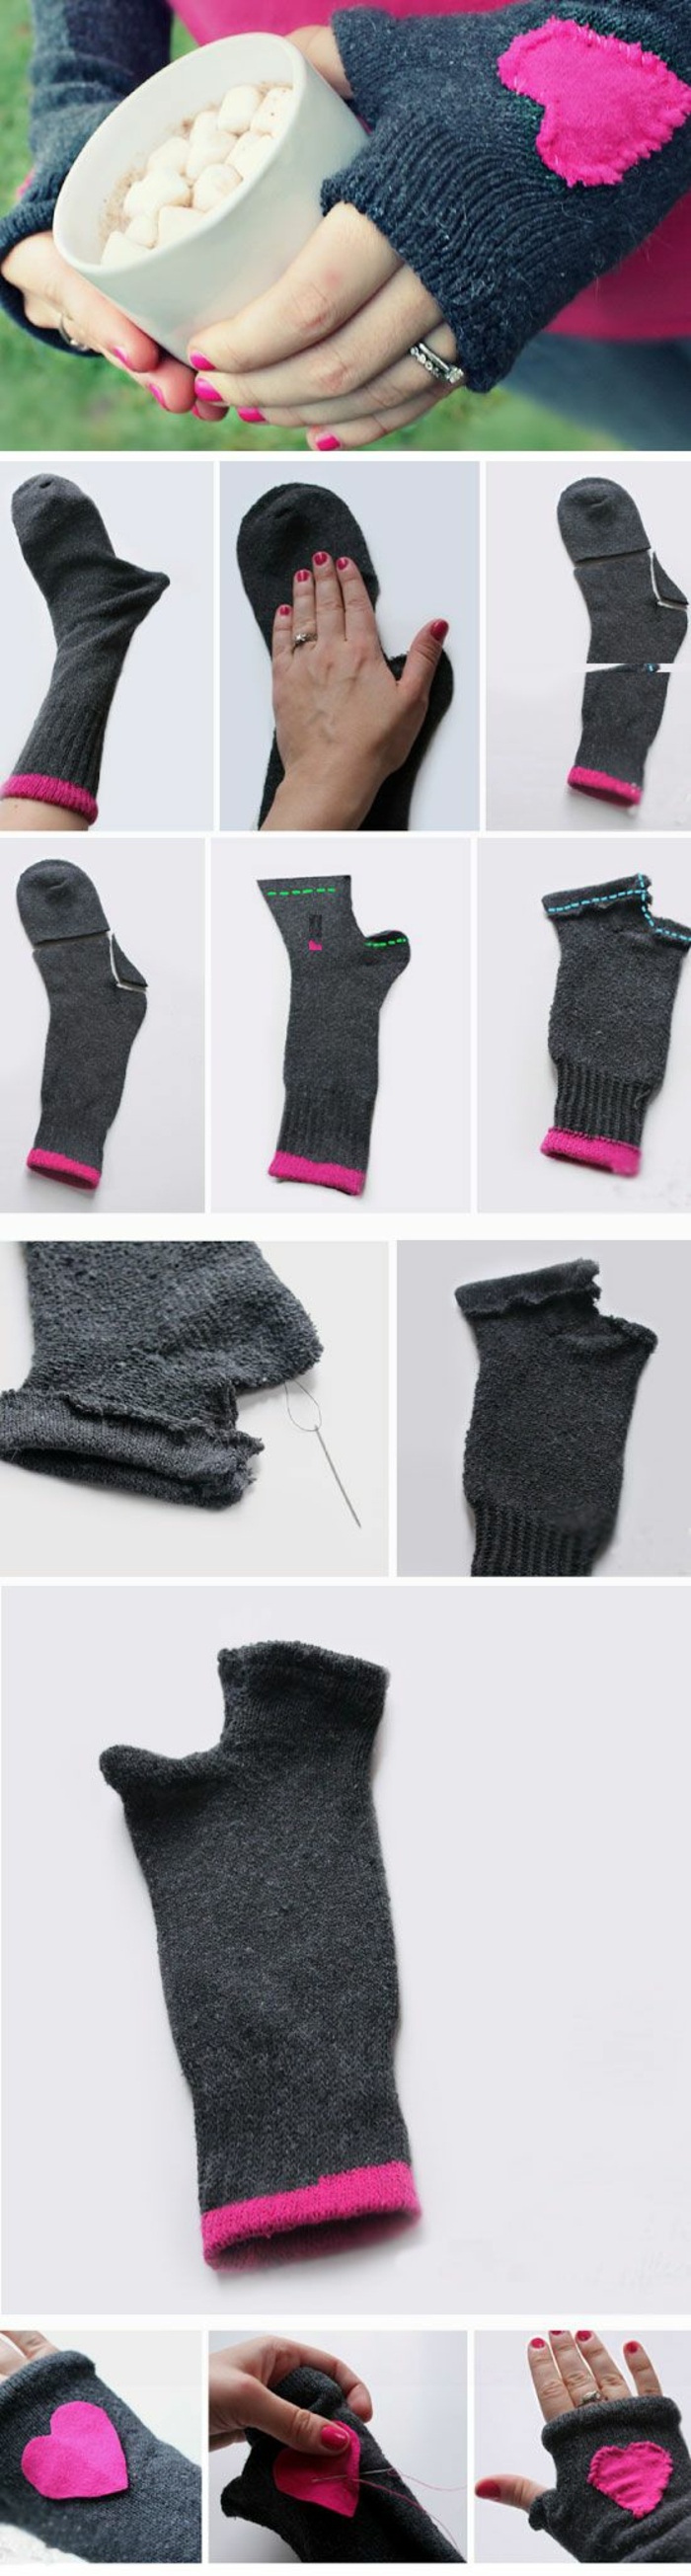 ideas originales de manualidades para hacer con niños , guantes hechos de calcetines con decoración corazón, ideas de regalos para San Valentin 